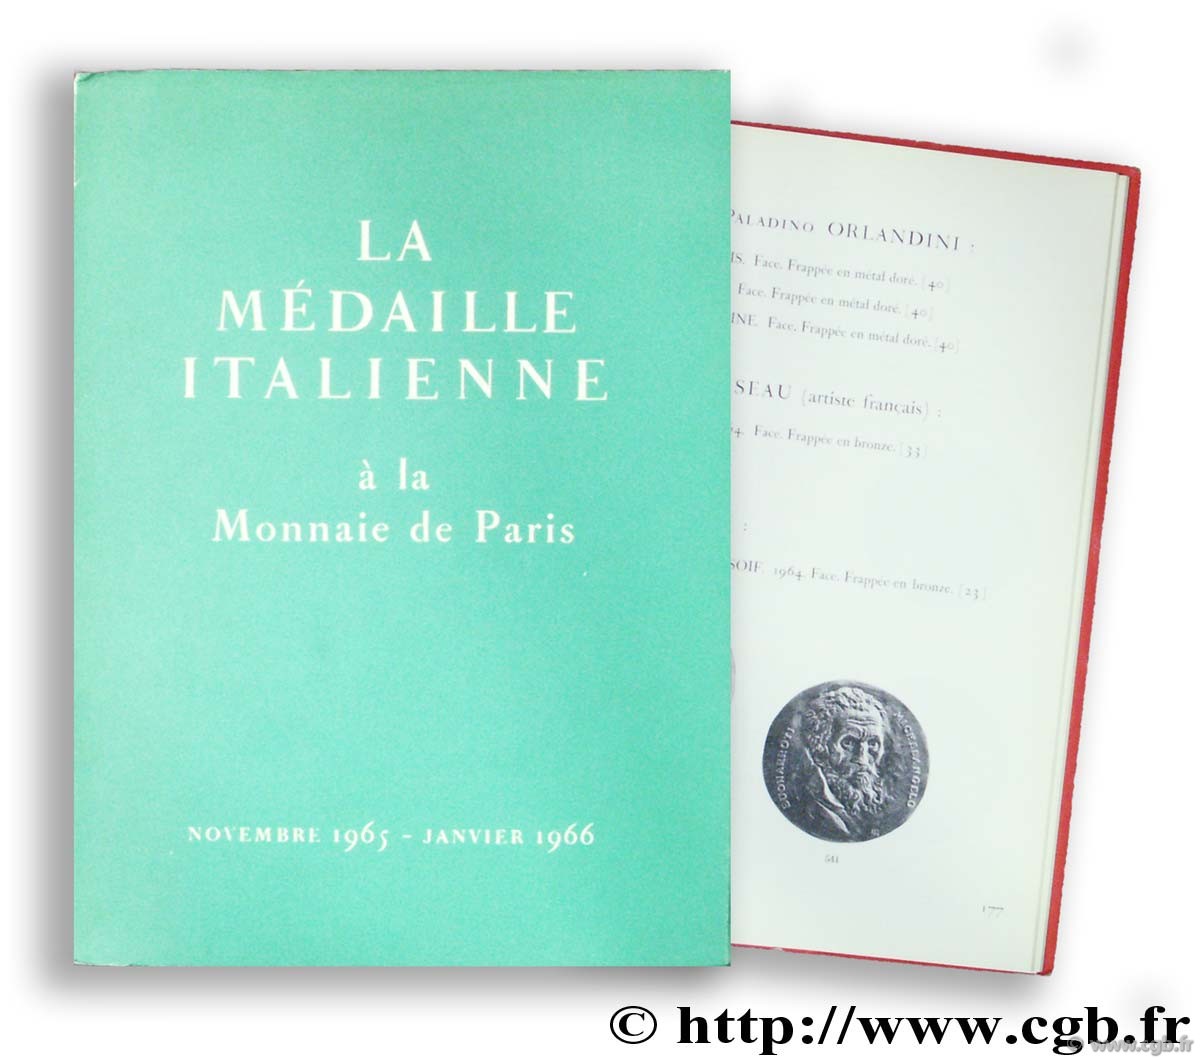 La médaille italienne à la Monnaie de Paris, Hôtel de la Monnaie, novembre 1965 - janvier 1966 